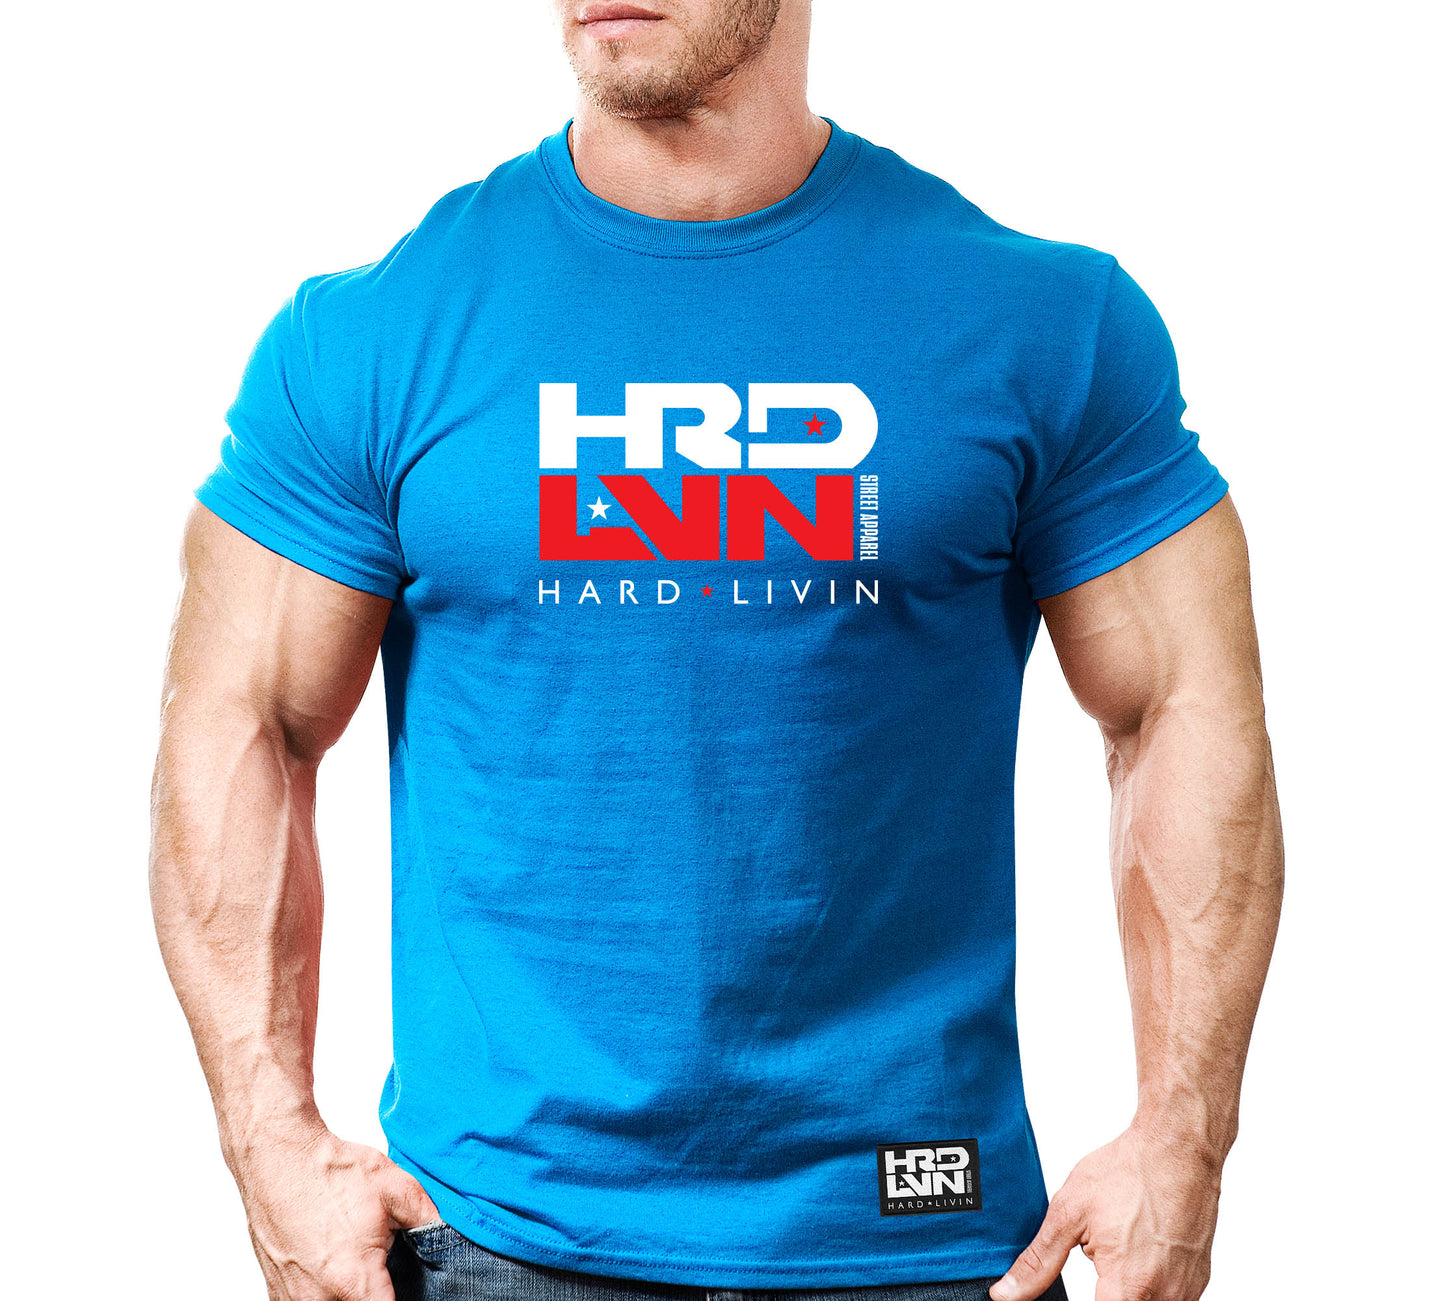 HRD-LVN (Hard Livin)-24: WT-RD